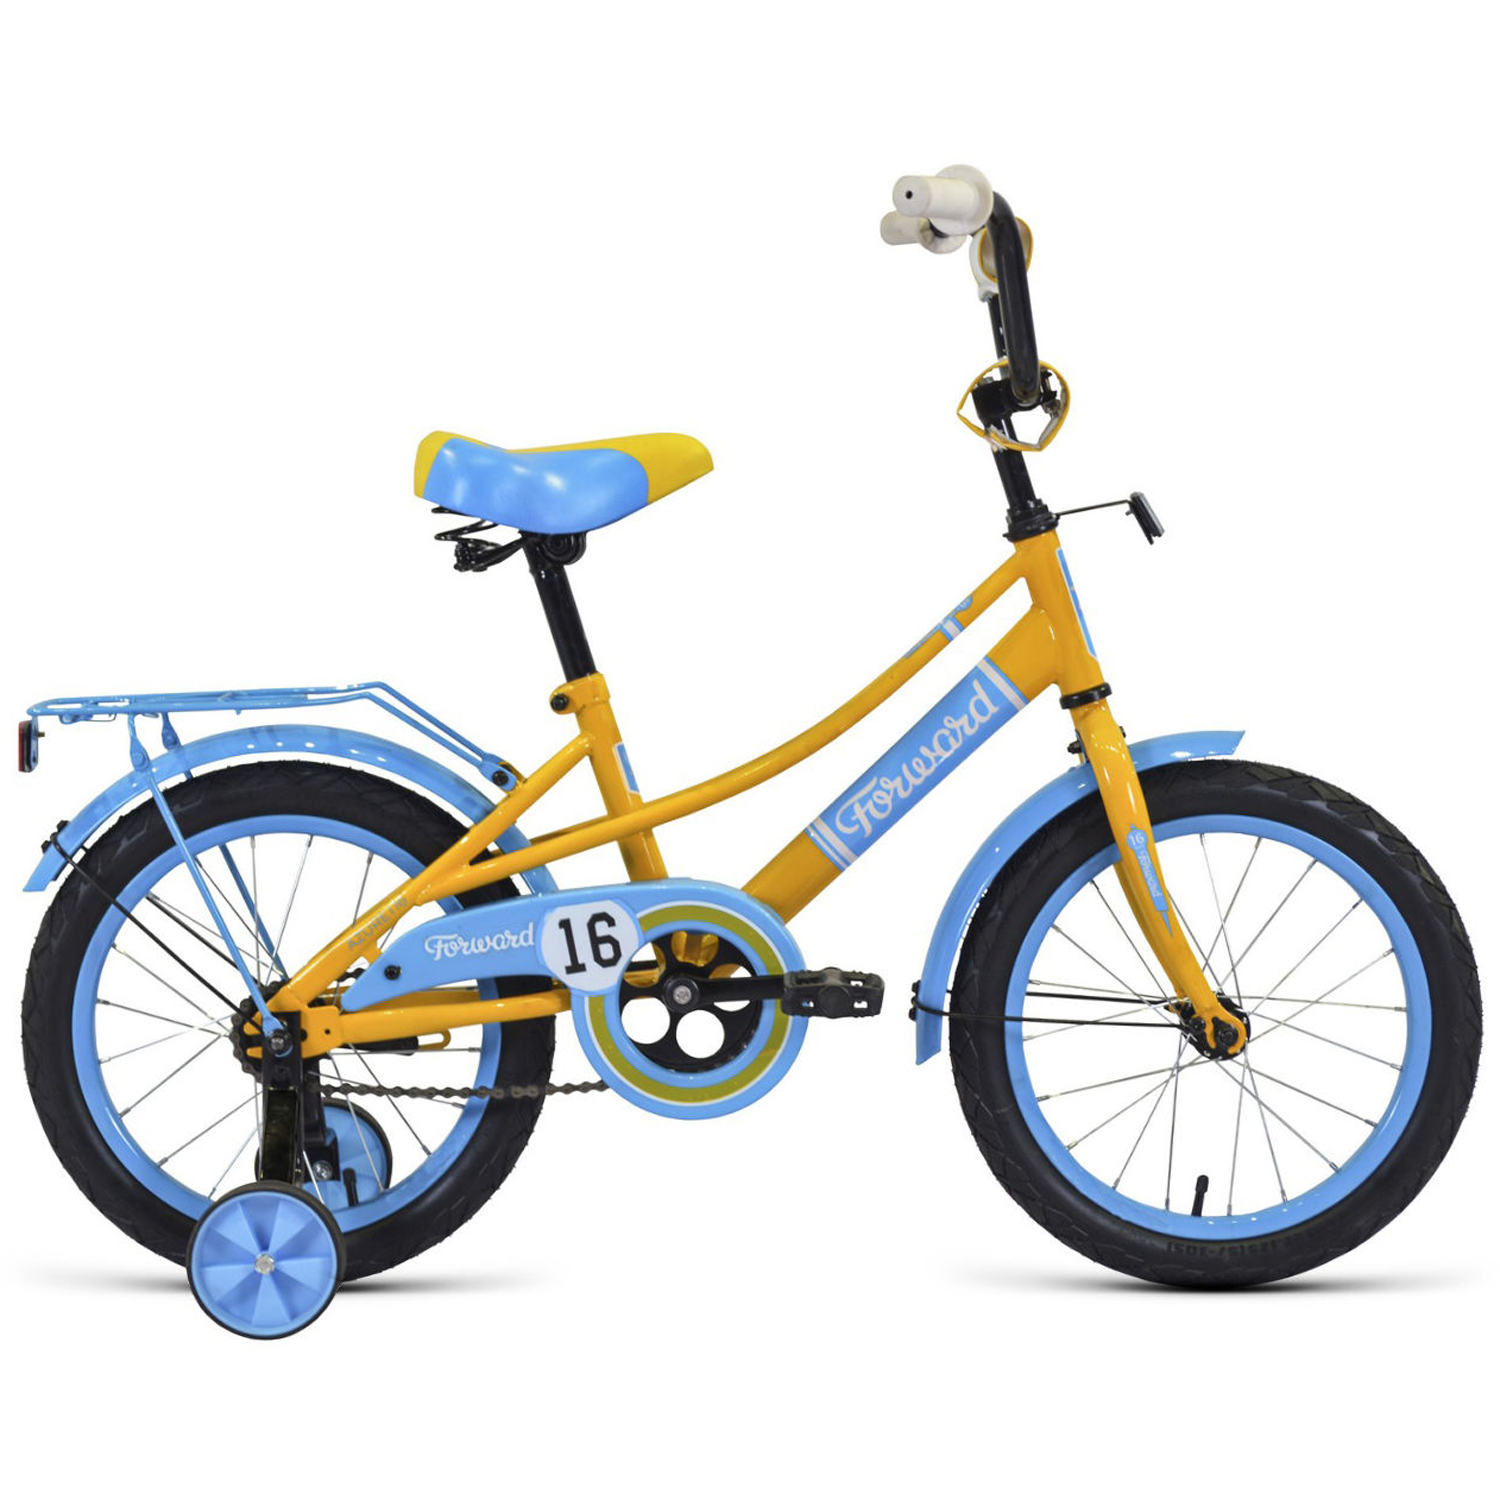 Двухколесный велосипед Forward Azure 16 2021, желтый/голубой двухколесный велосипед forward azure 16 2021 желтый голубой